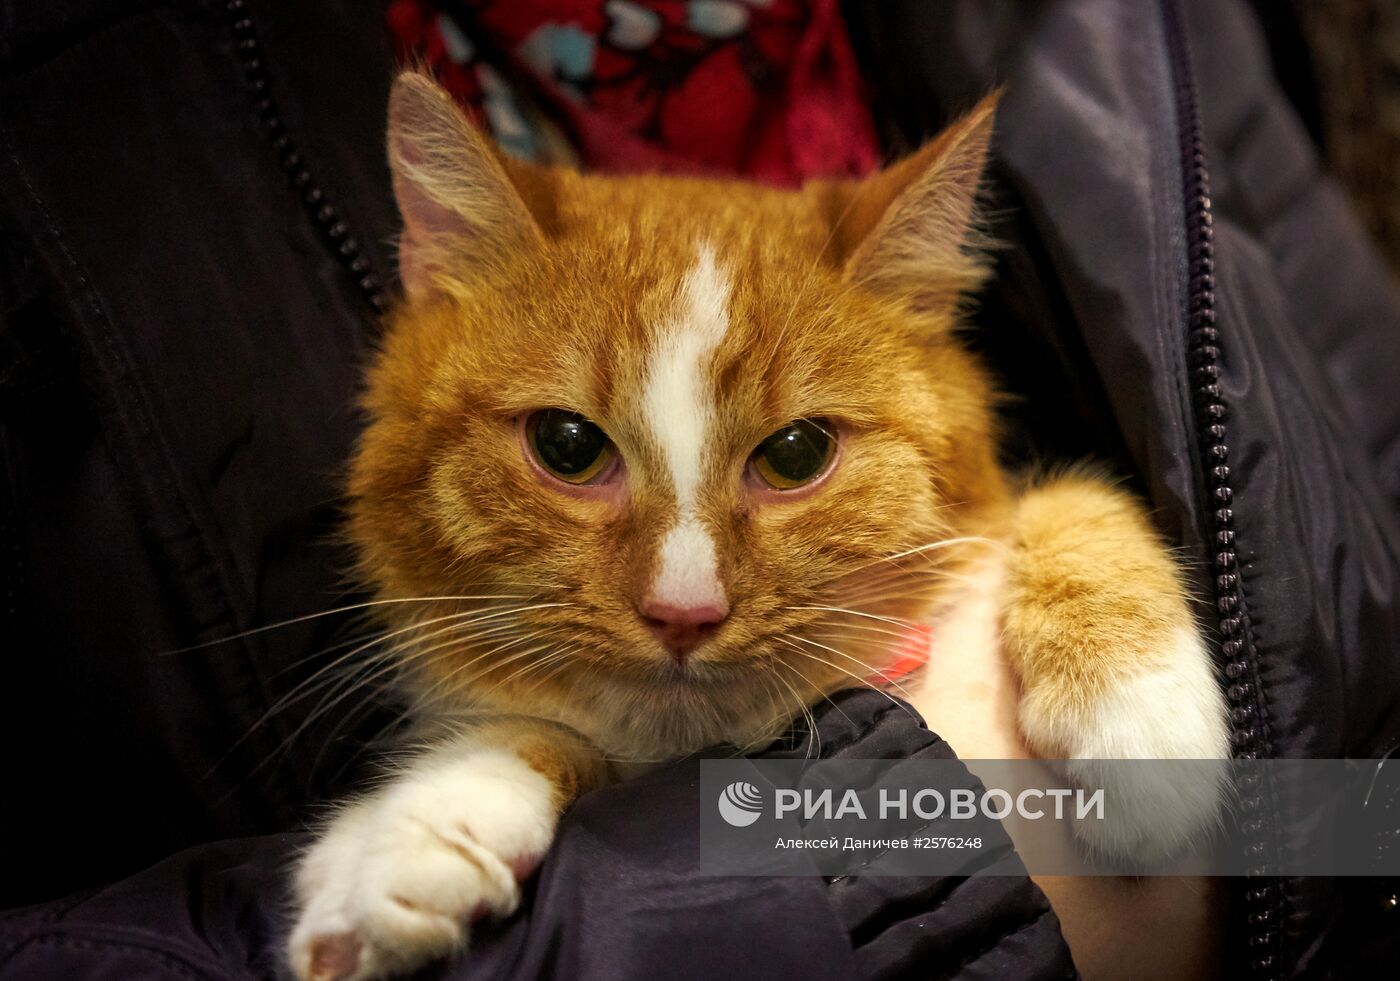 День раздачи бездомных рыжих котов в Котокафе "Республика Кошек" в Санкт-Петербурге